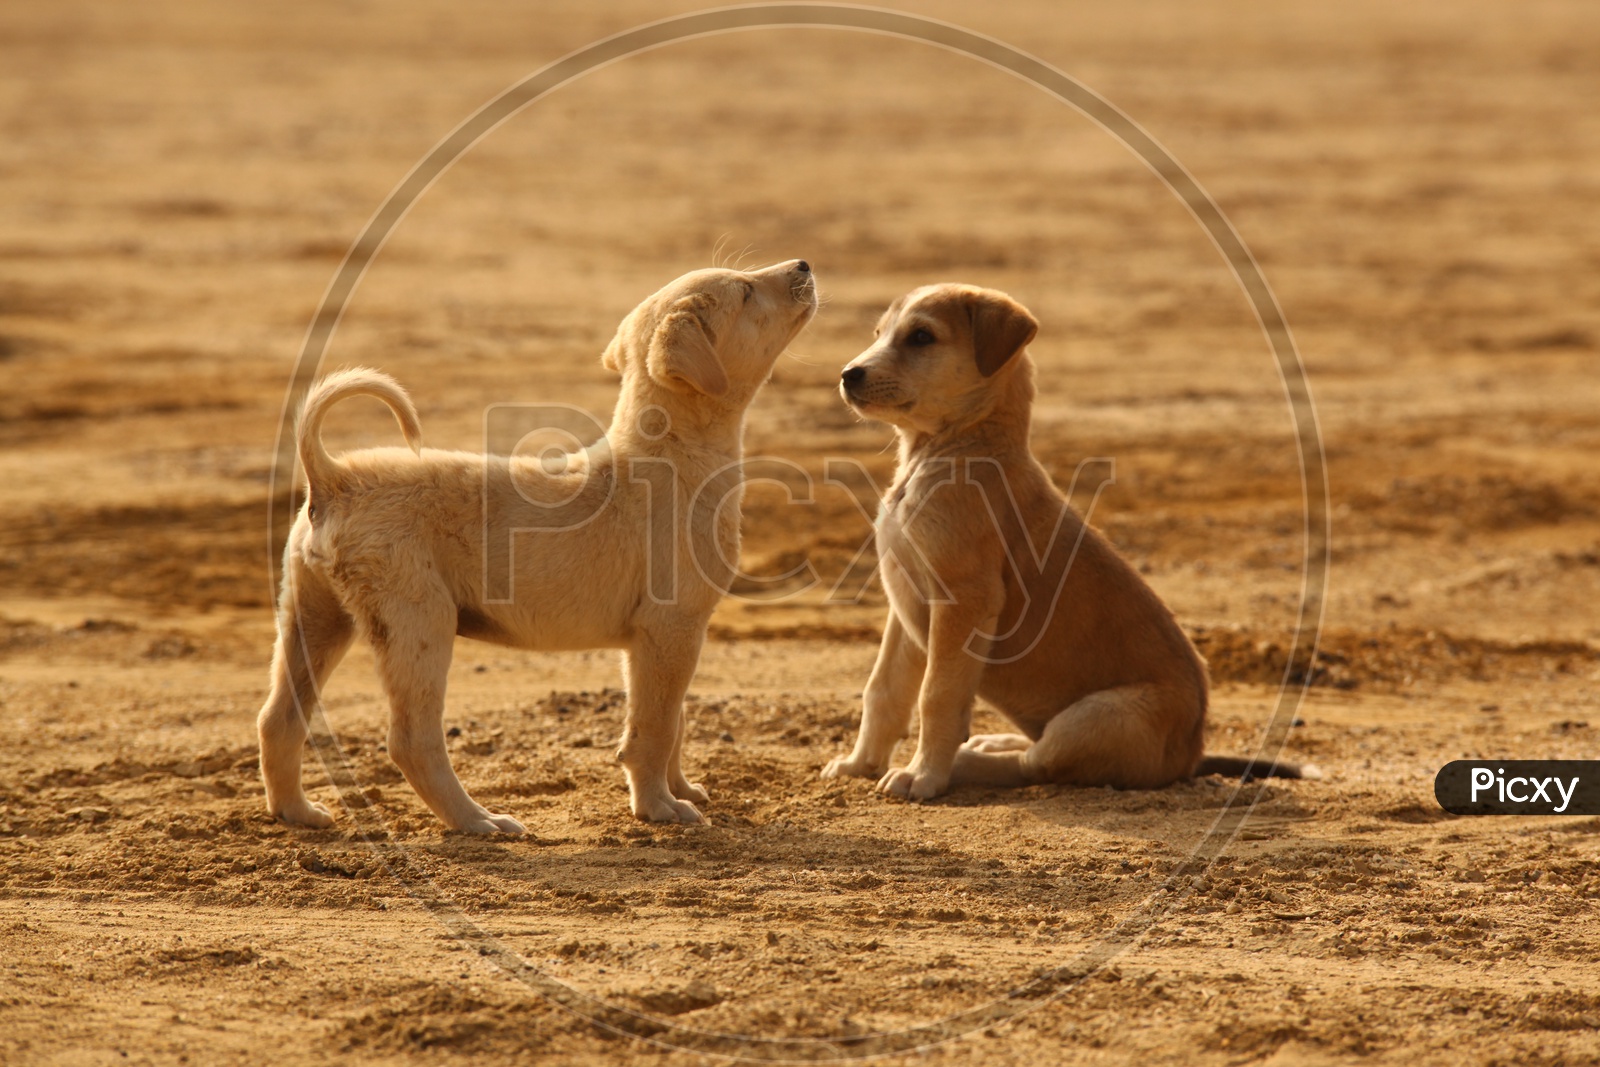 Puppy dogs in Desert